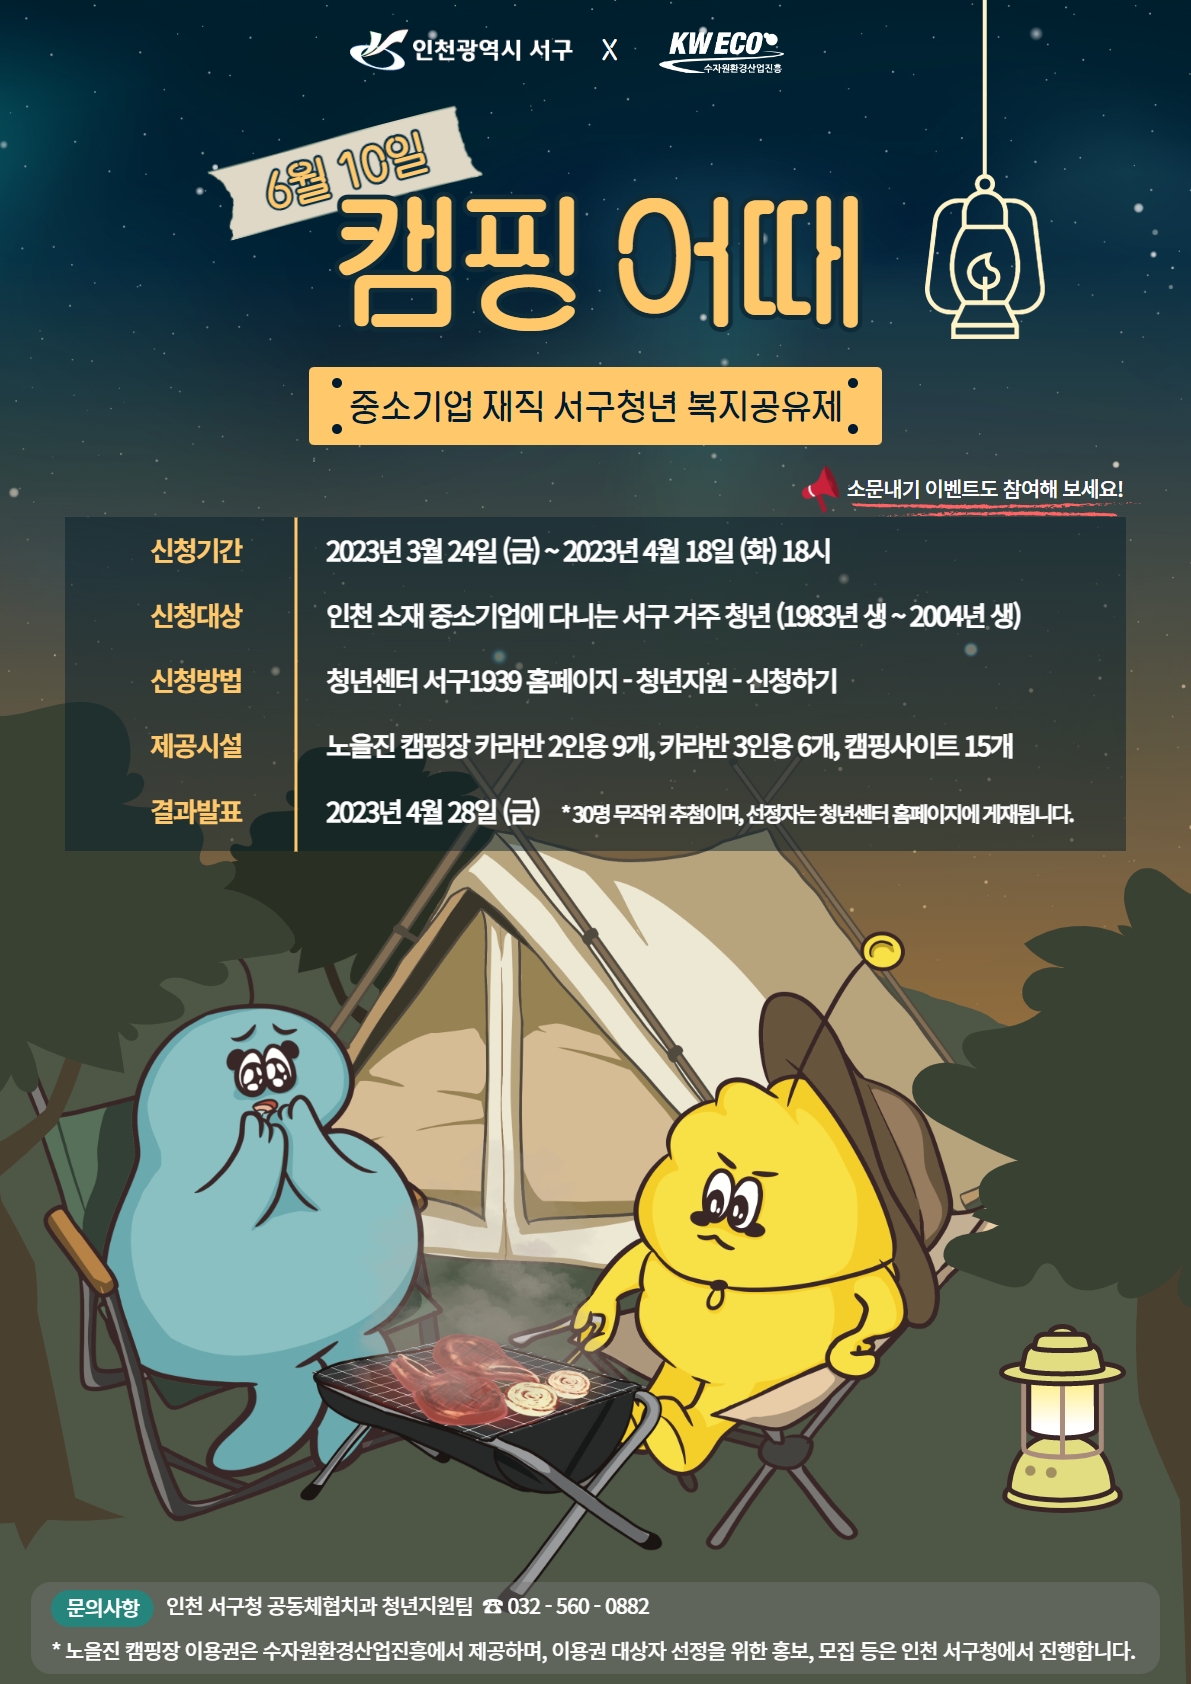 중소기업 재직 서구청년 복지공유제 ‘캠핑 어때’ 포스터